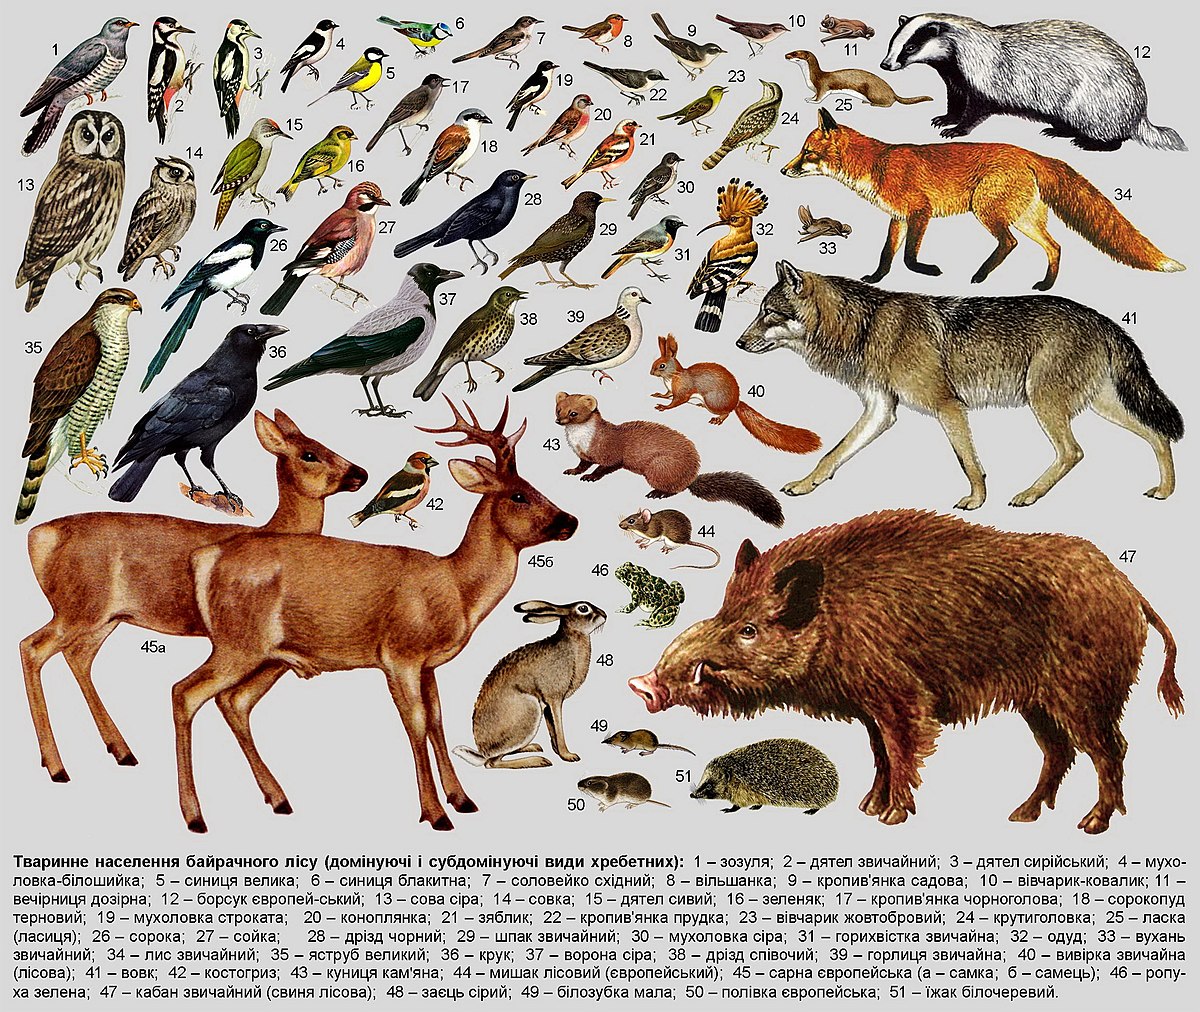 Таємниці природи: Цікаві факти про угруповання тварин та важливість біорізноманіття